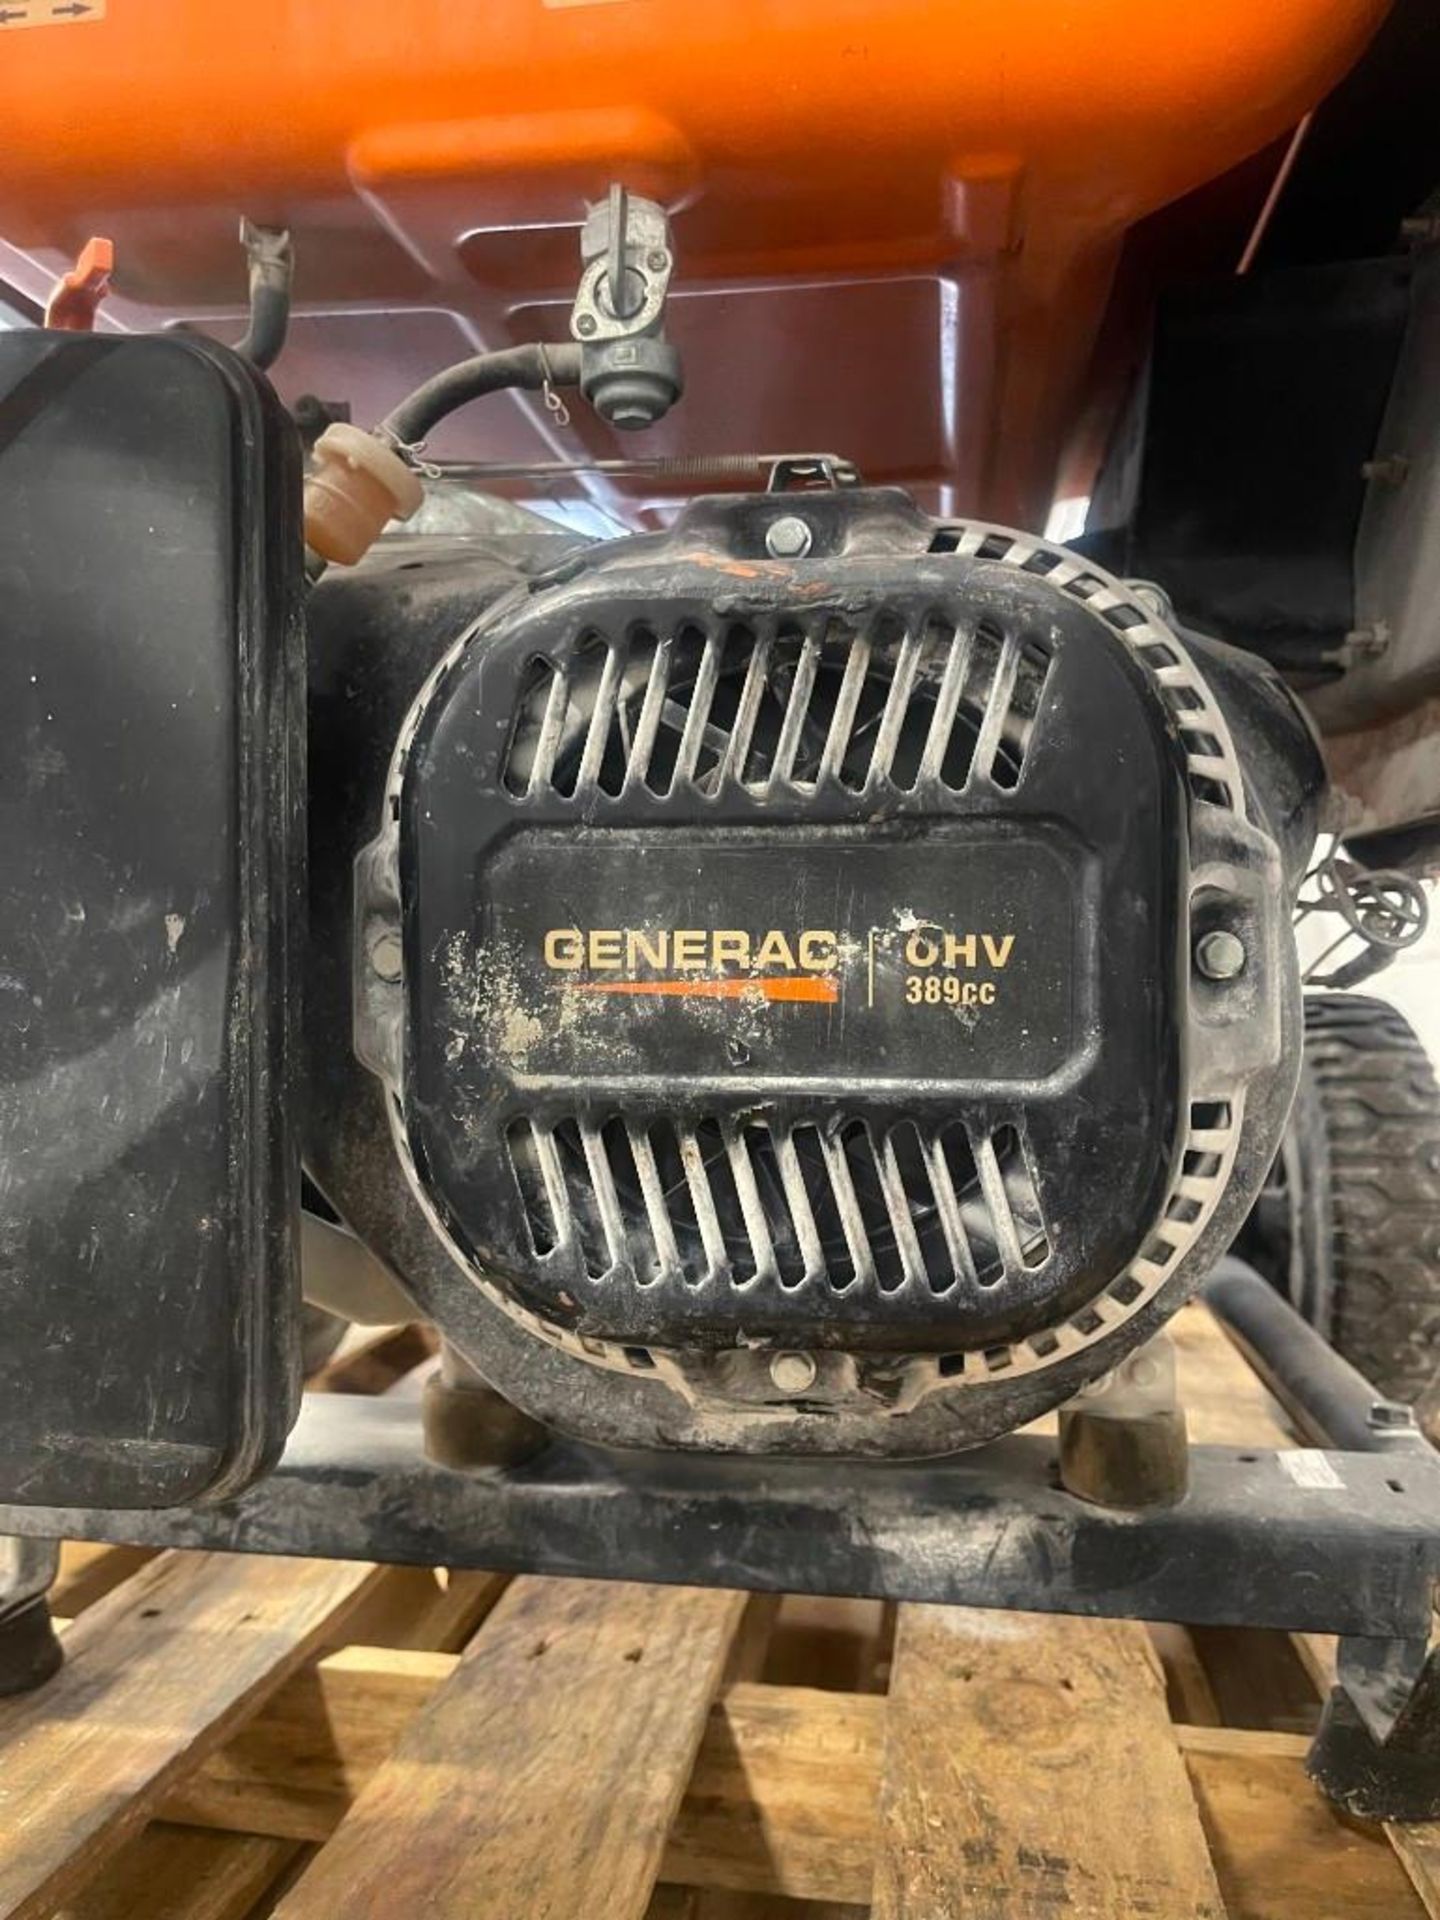 Generac Power Rush GS 6500 Portable Generator, 6500 Watts - Image 7 of 7